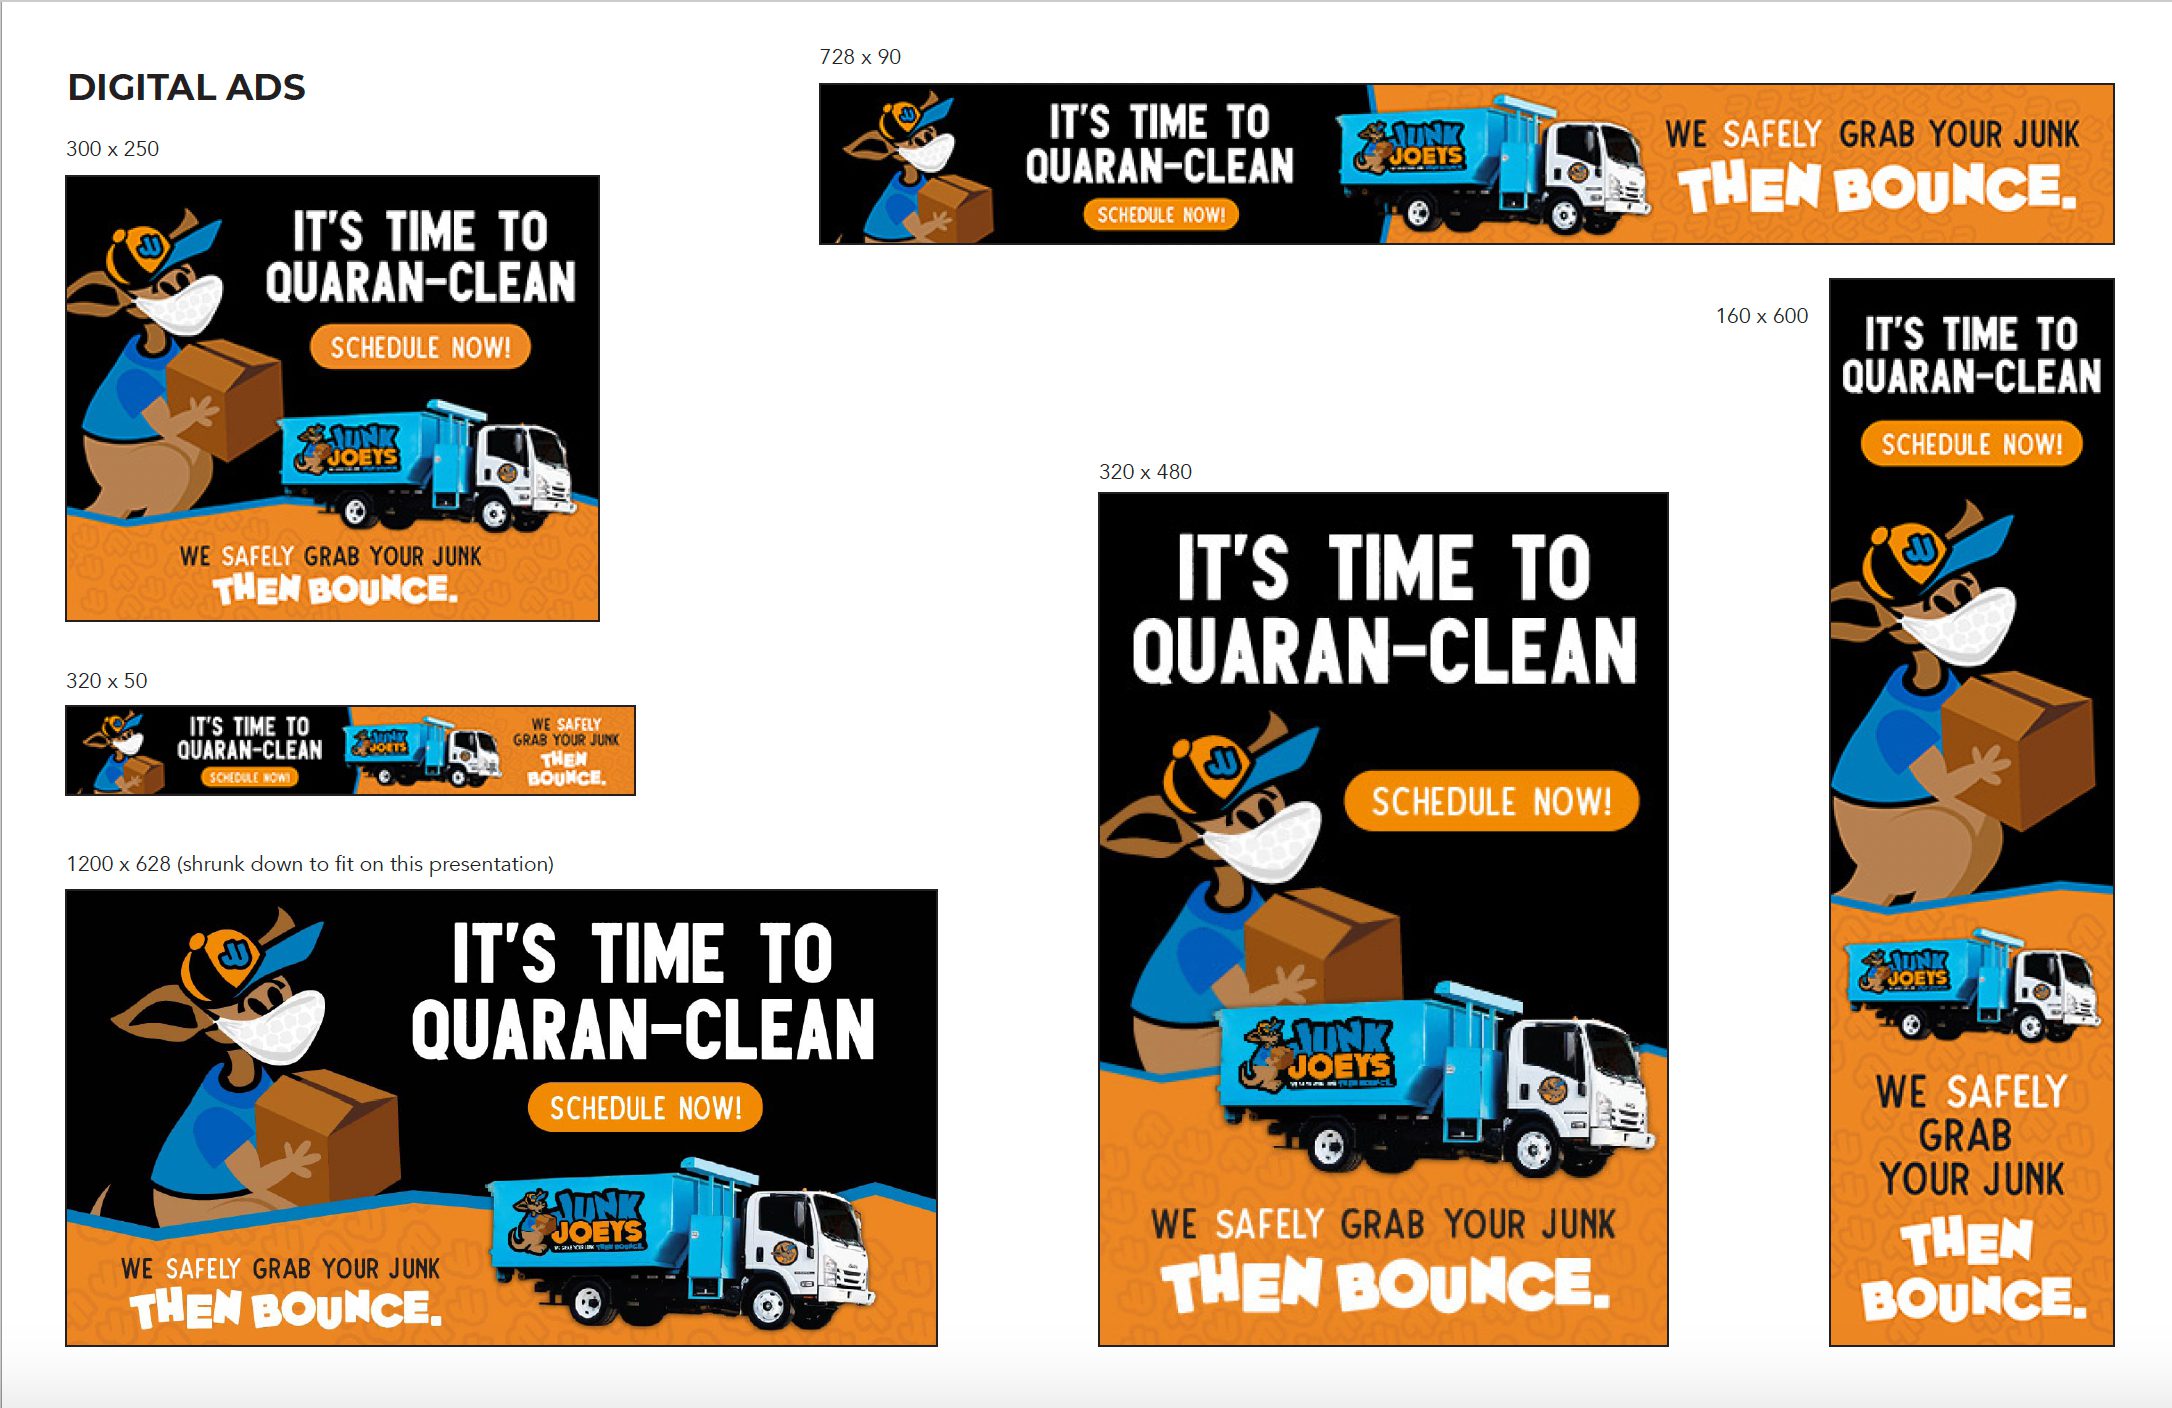 Junk Joeys Quaranclean Digital Ad Campaign